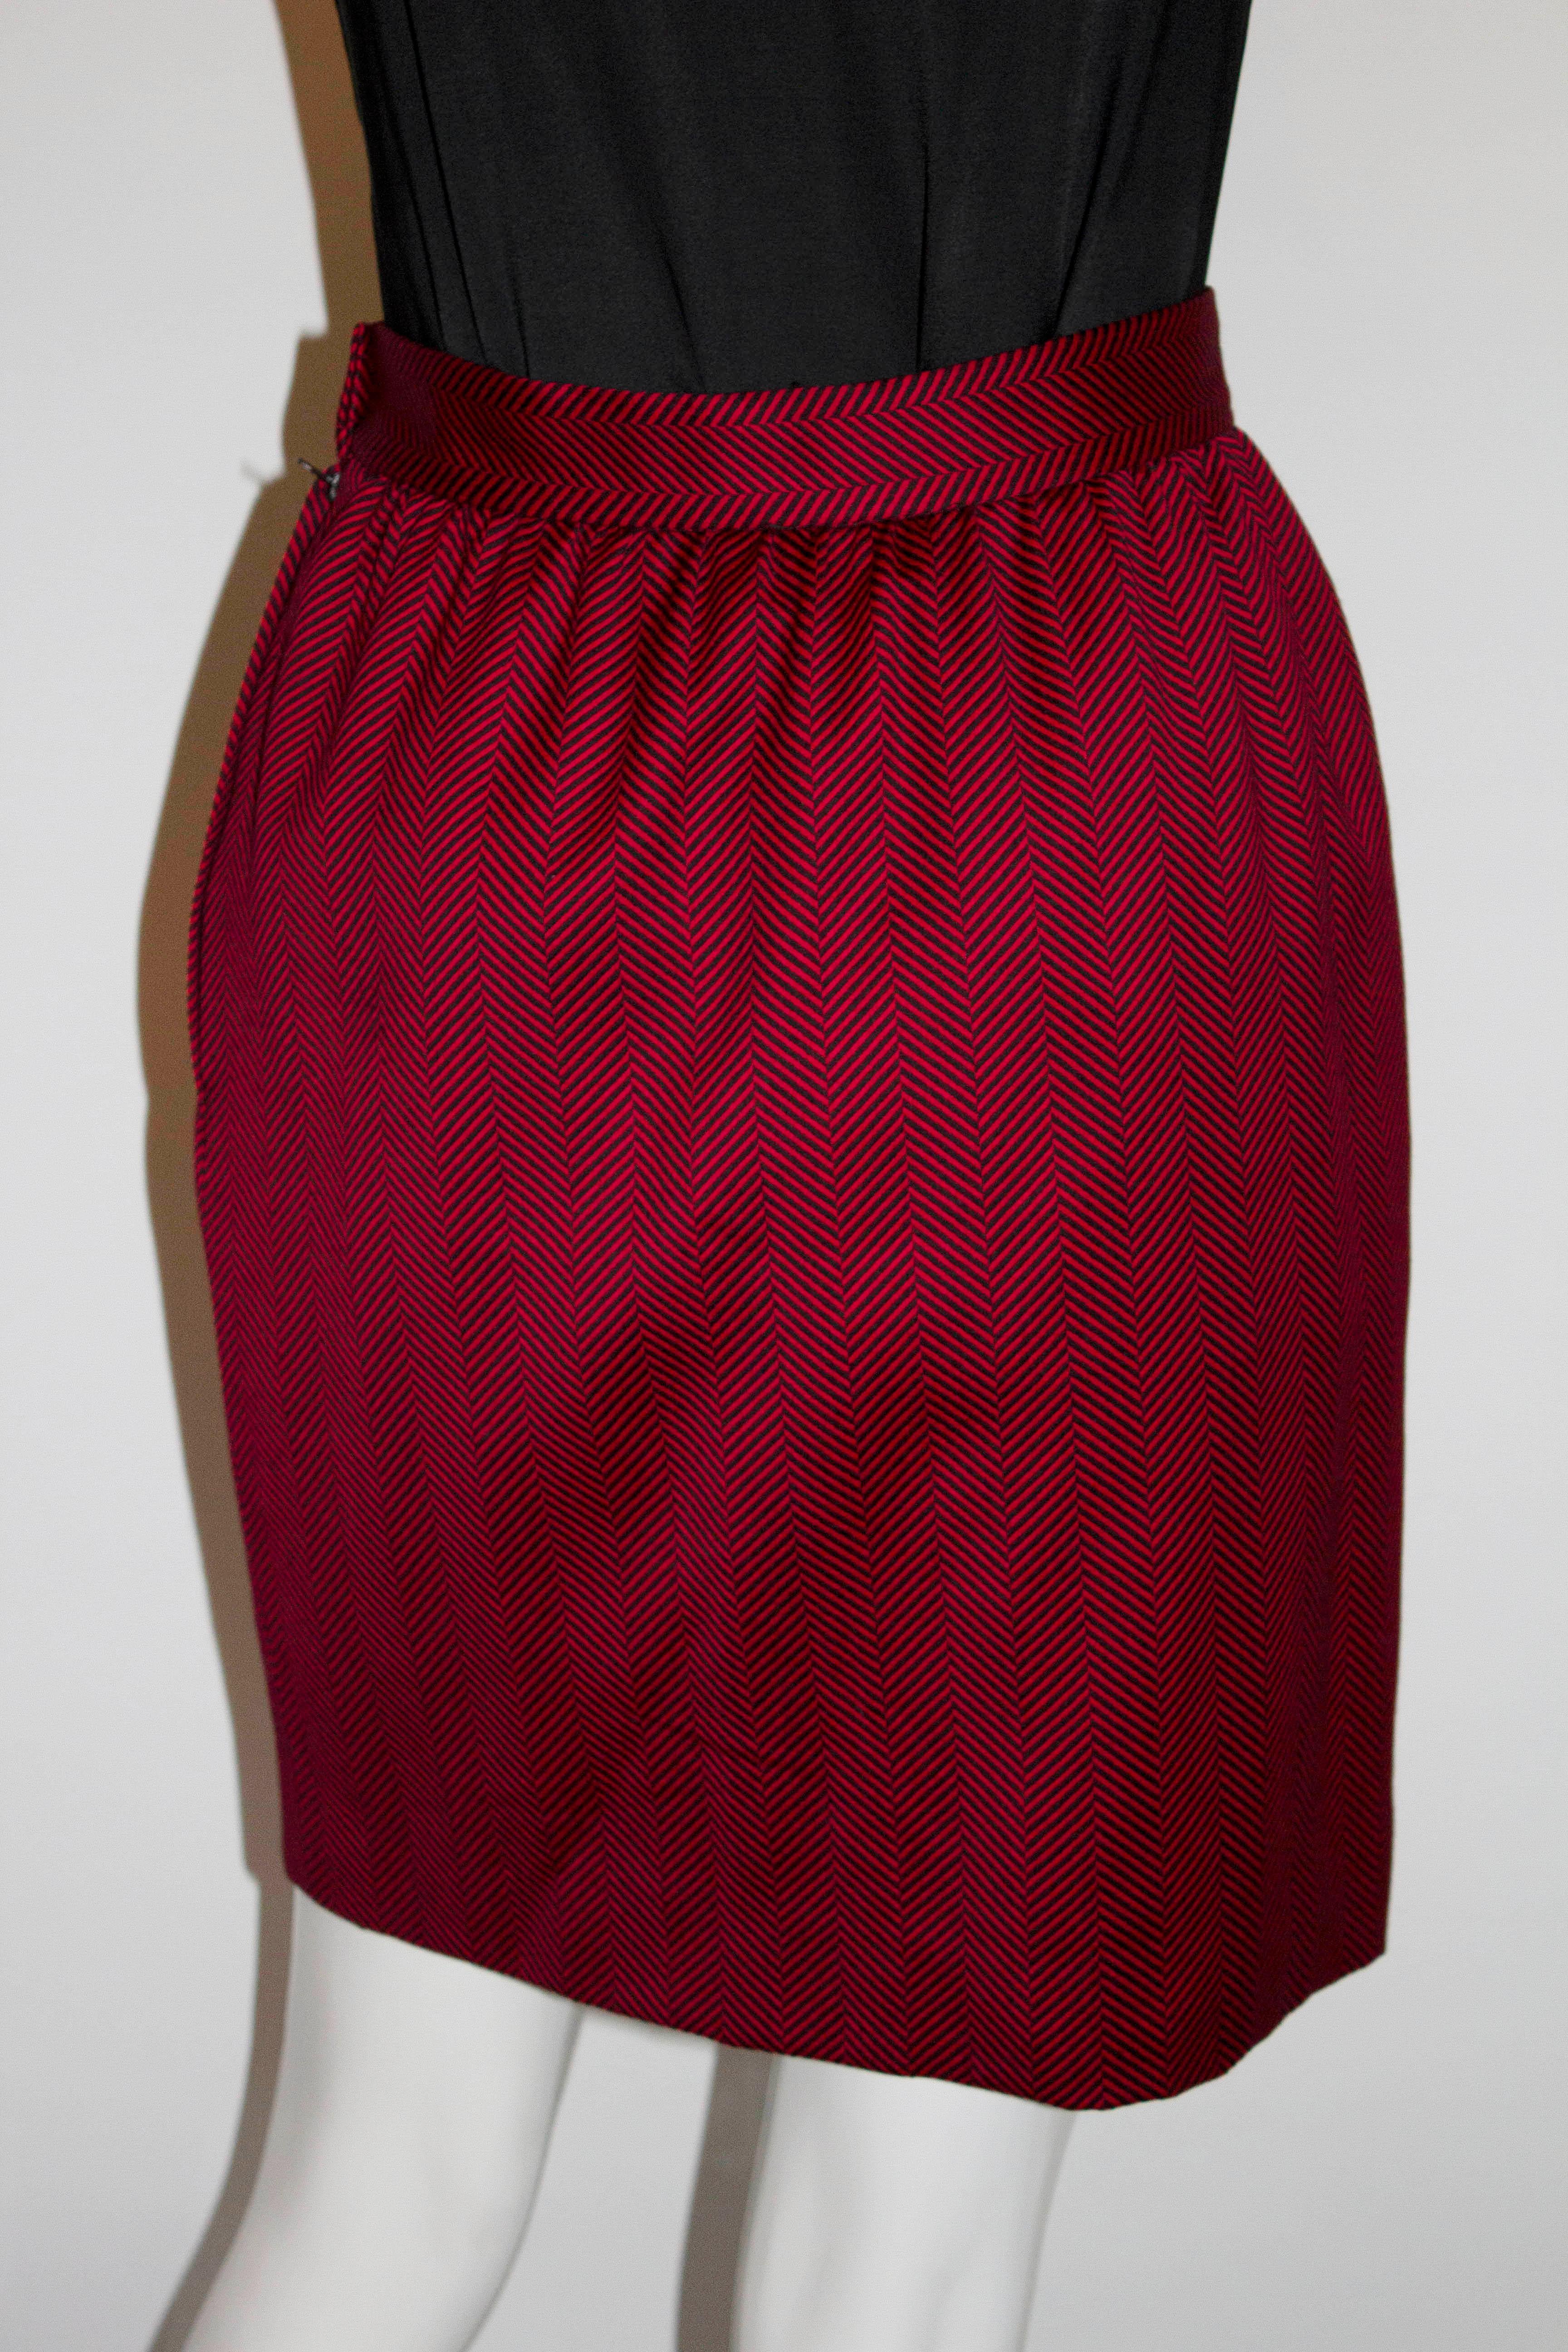 vintage skirt suit